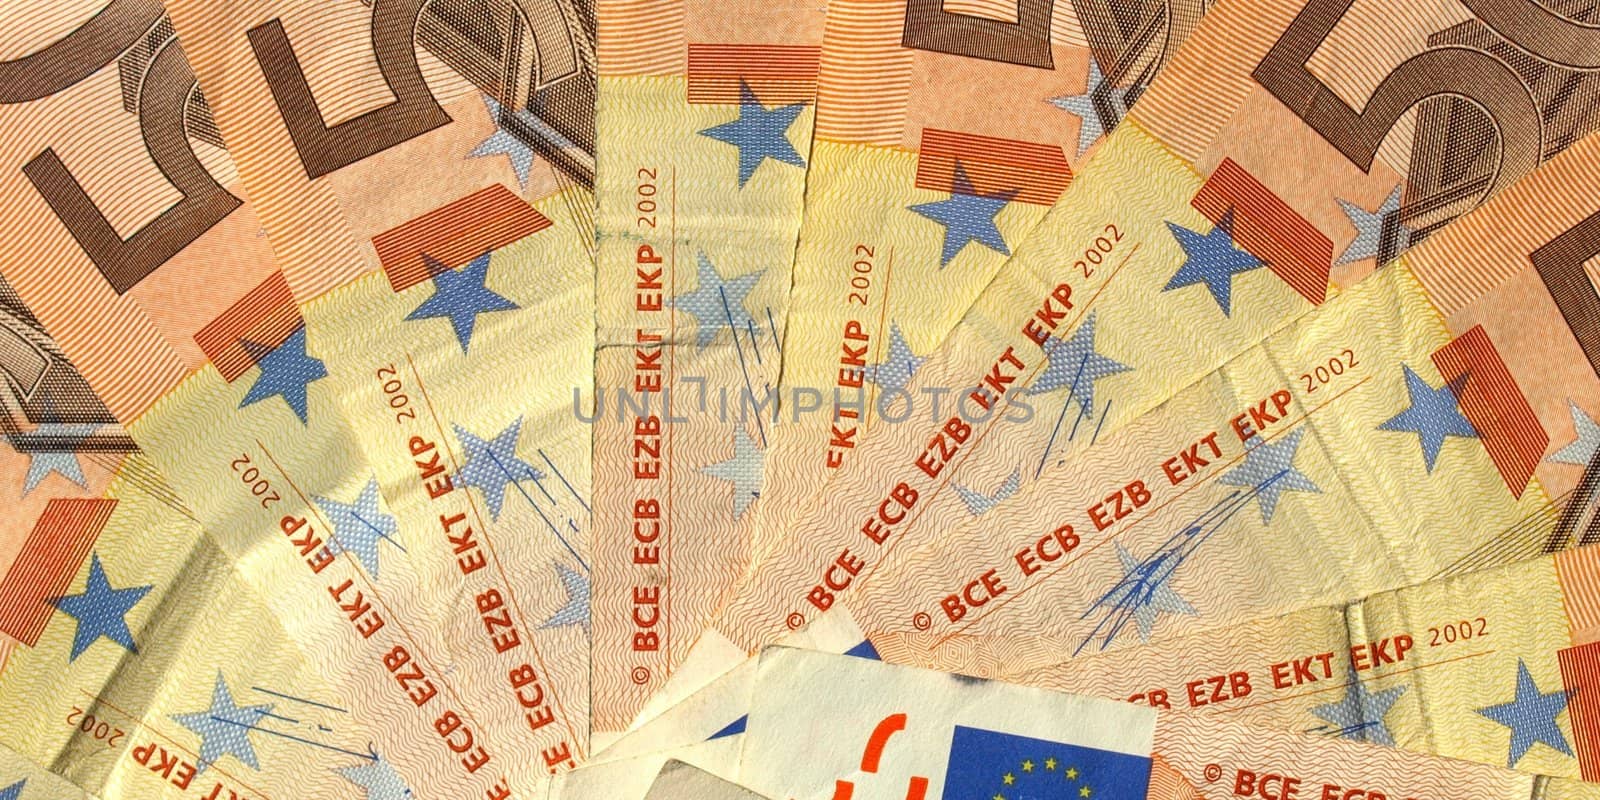 Euro note by claudiodivizia